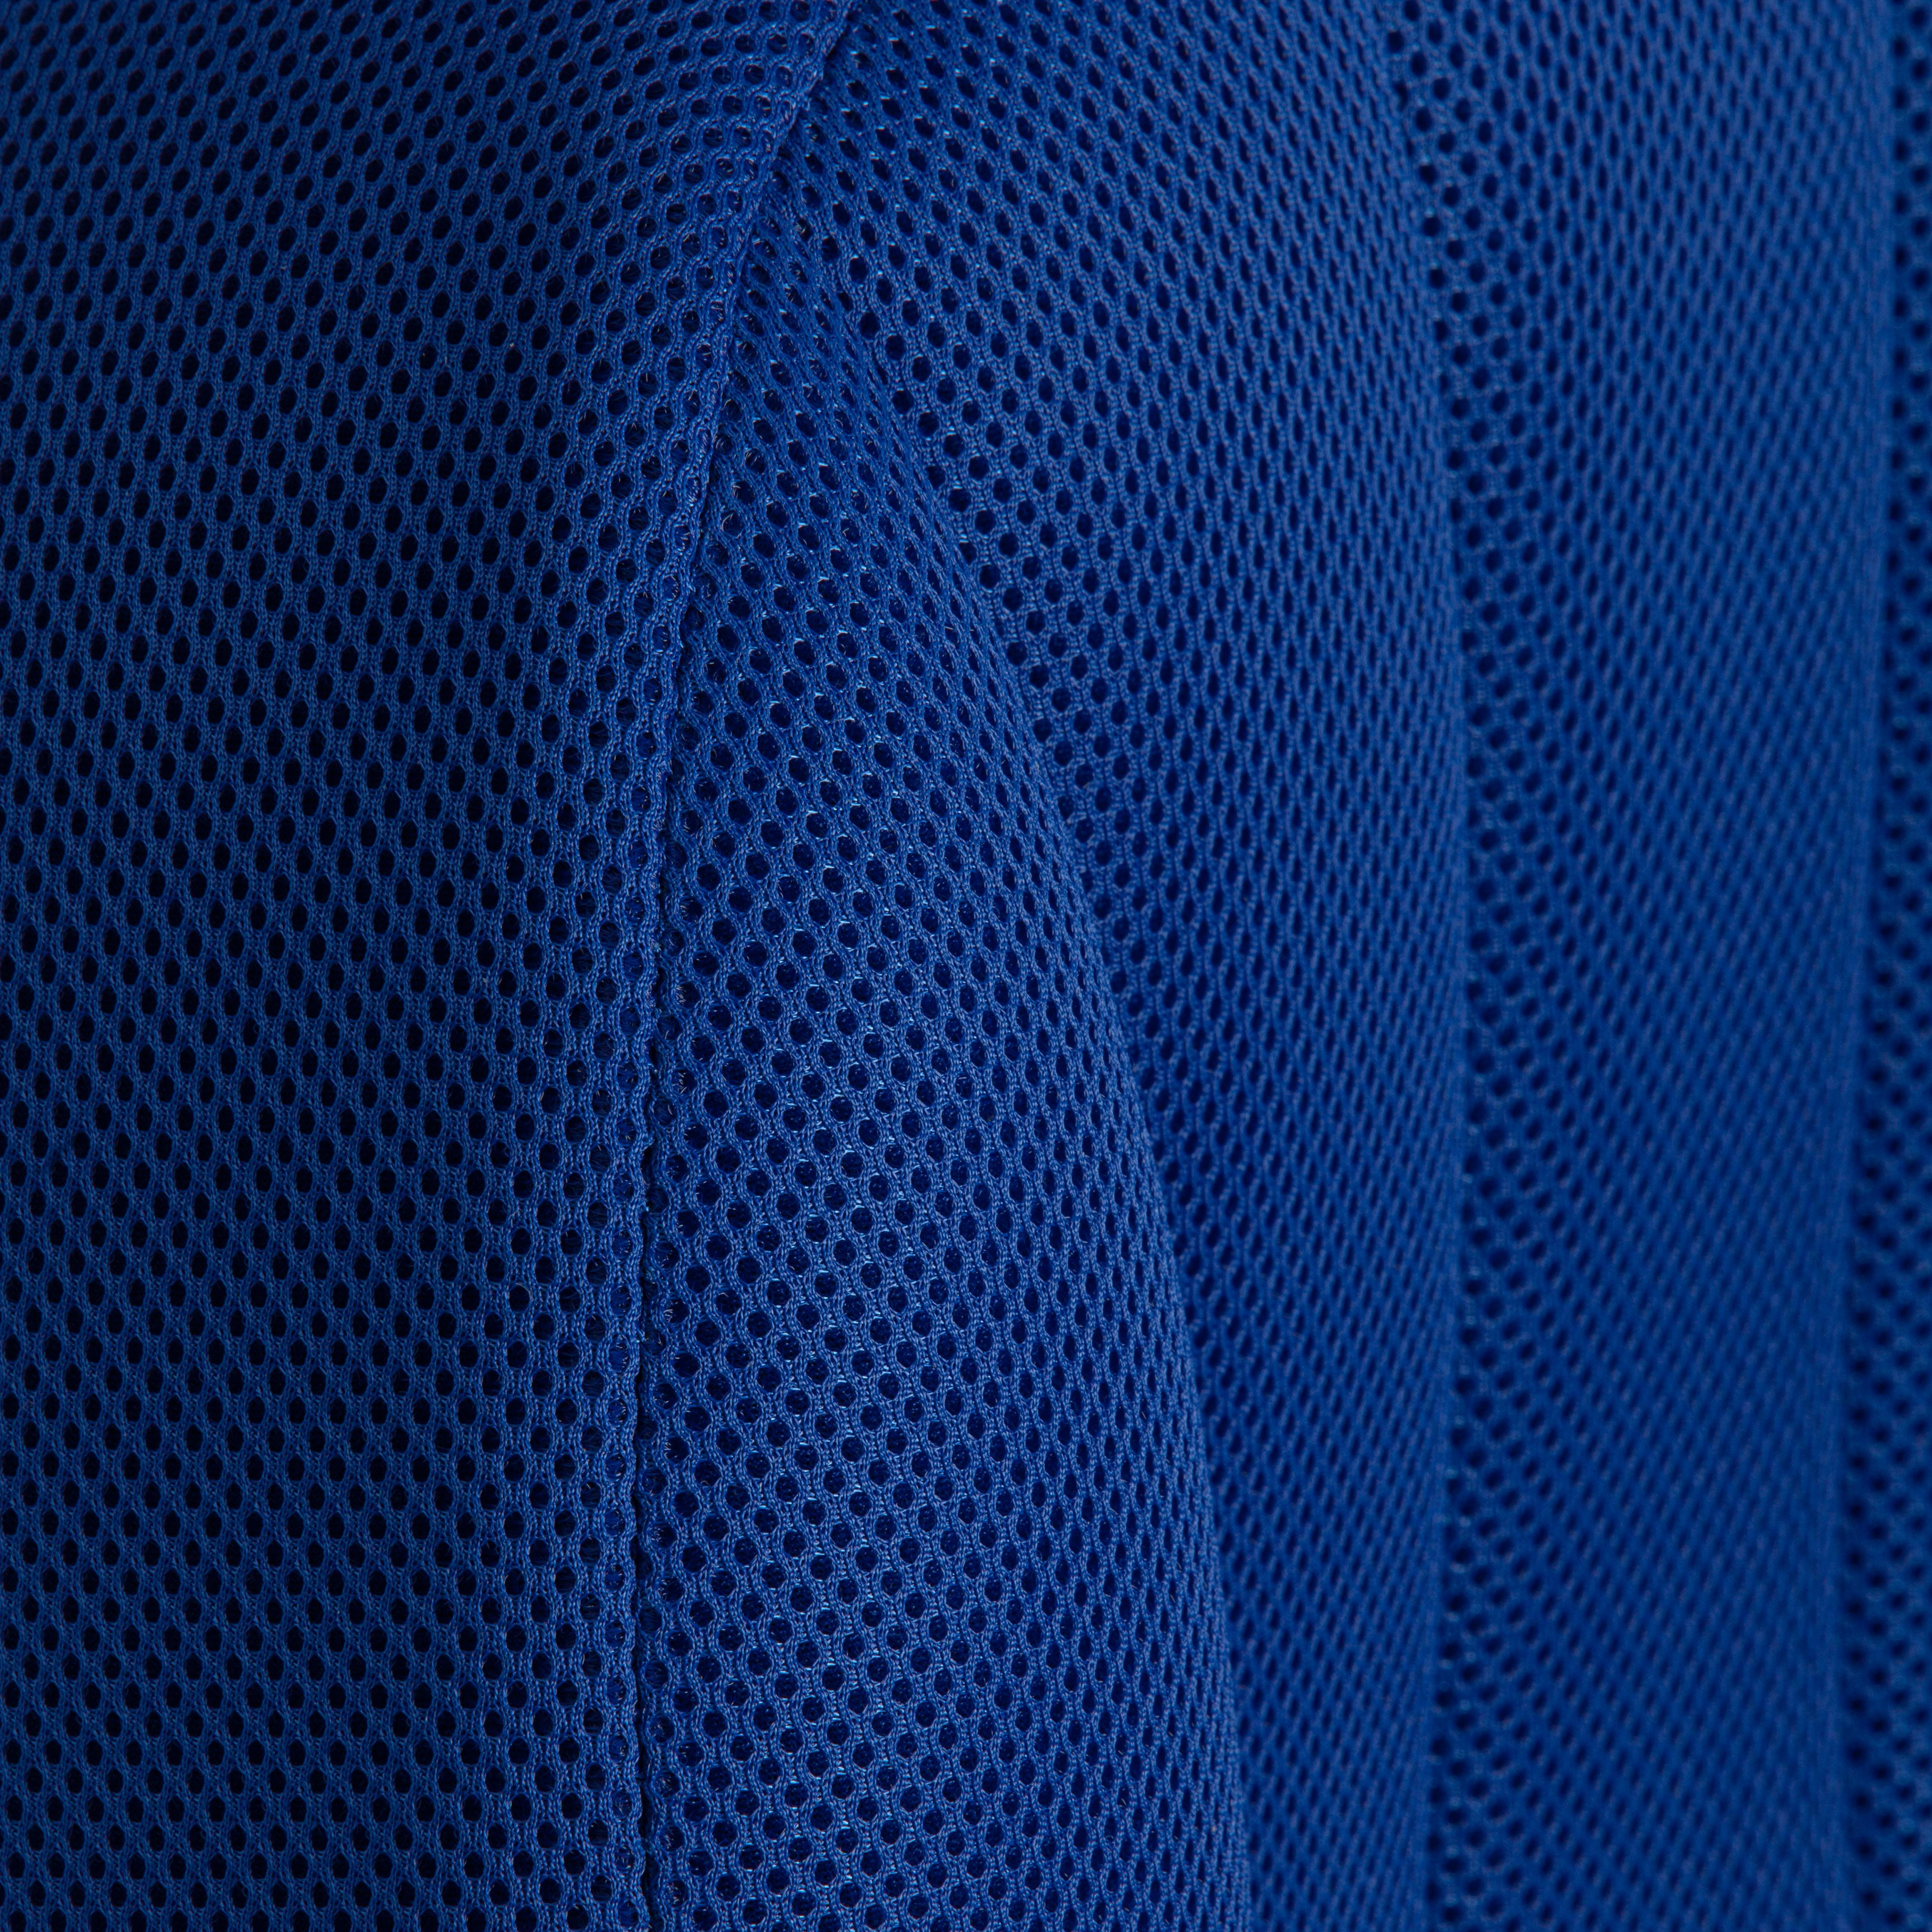 Кресло СН833 ткань, синий, TW-10